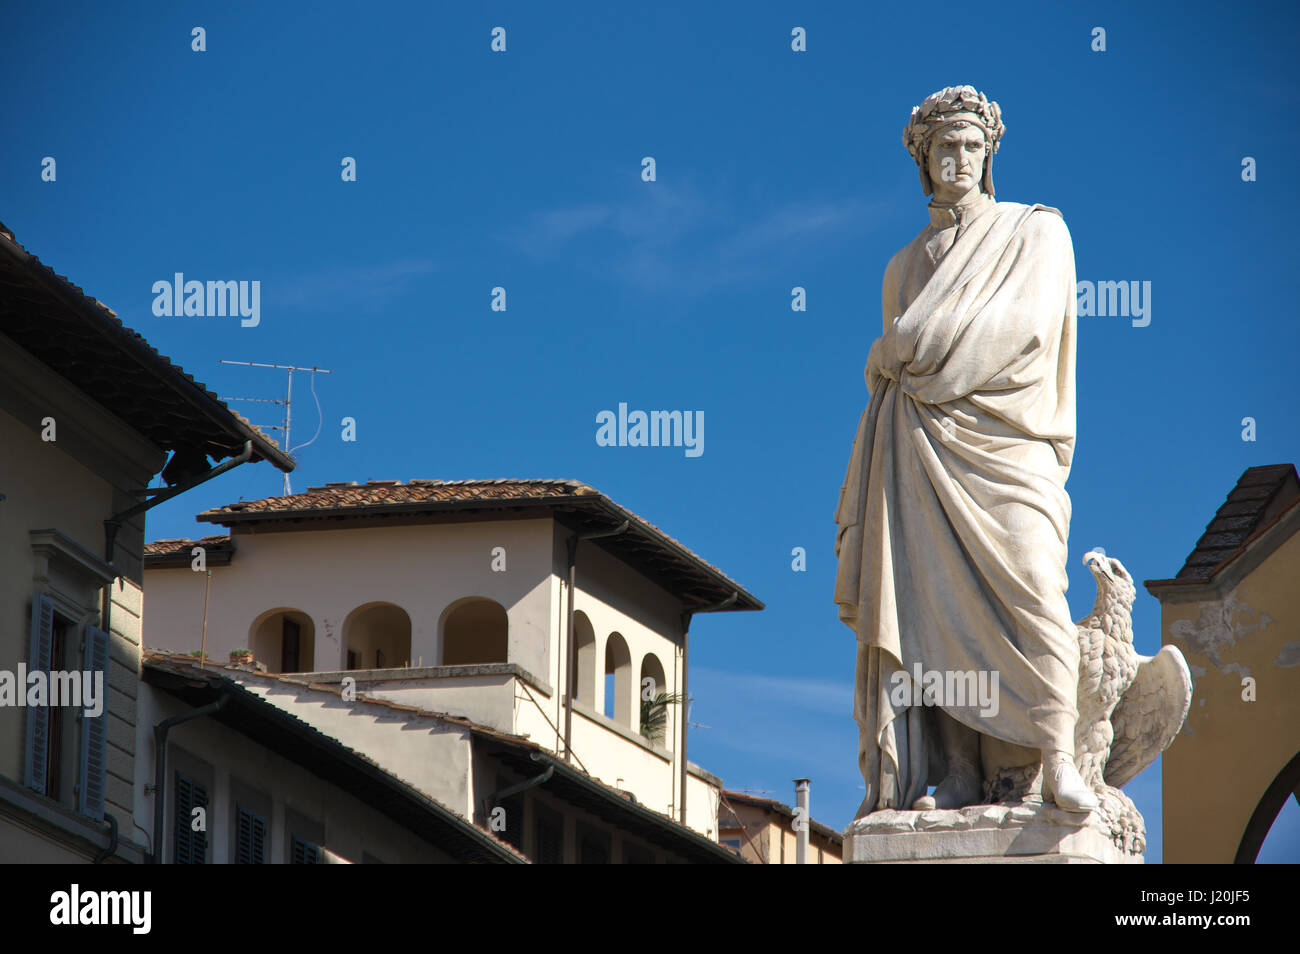 Monumento a Dante (1865) contro un cielo blu - statua in marmo di Dante Alighieri nella Piazza di Santa Croce a Firenze (Firenze), Toscana, Italia, Europa Foto Stock